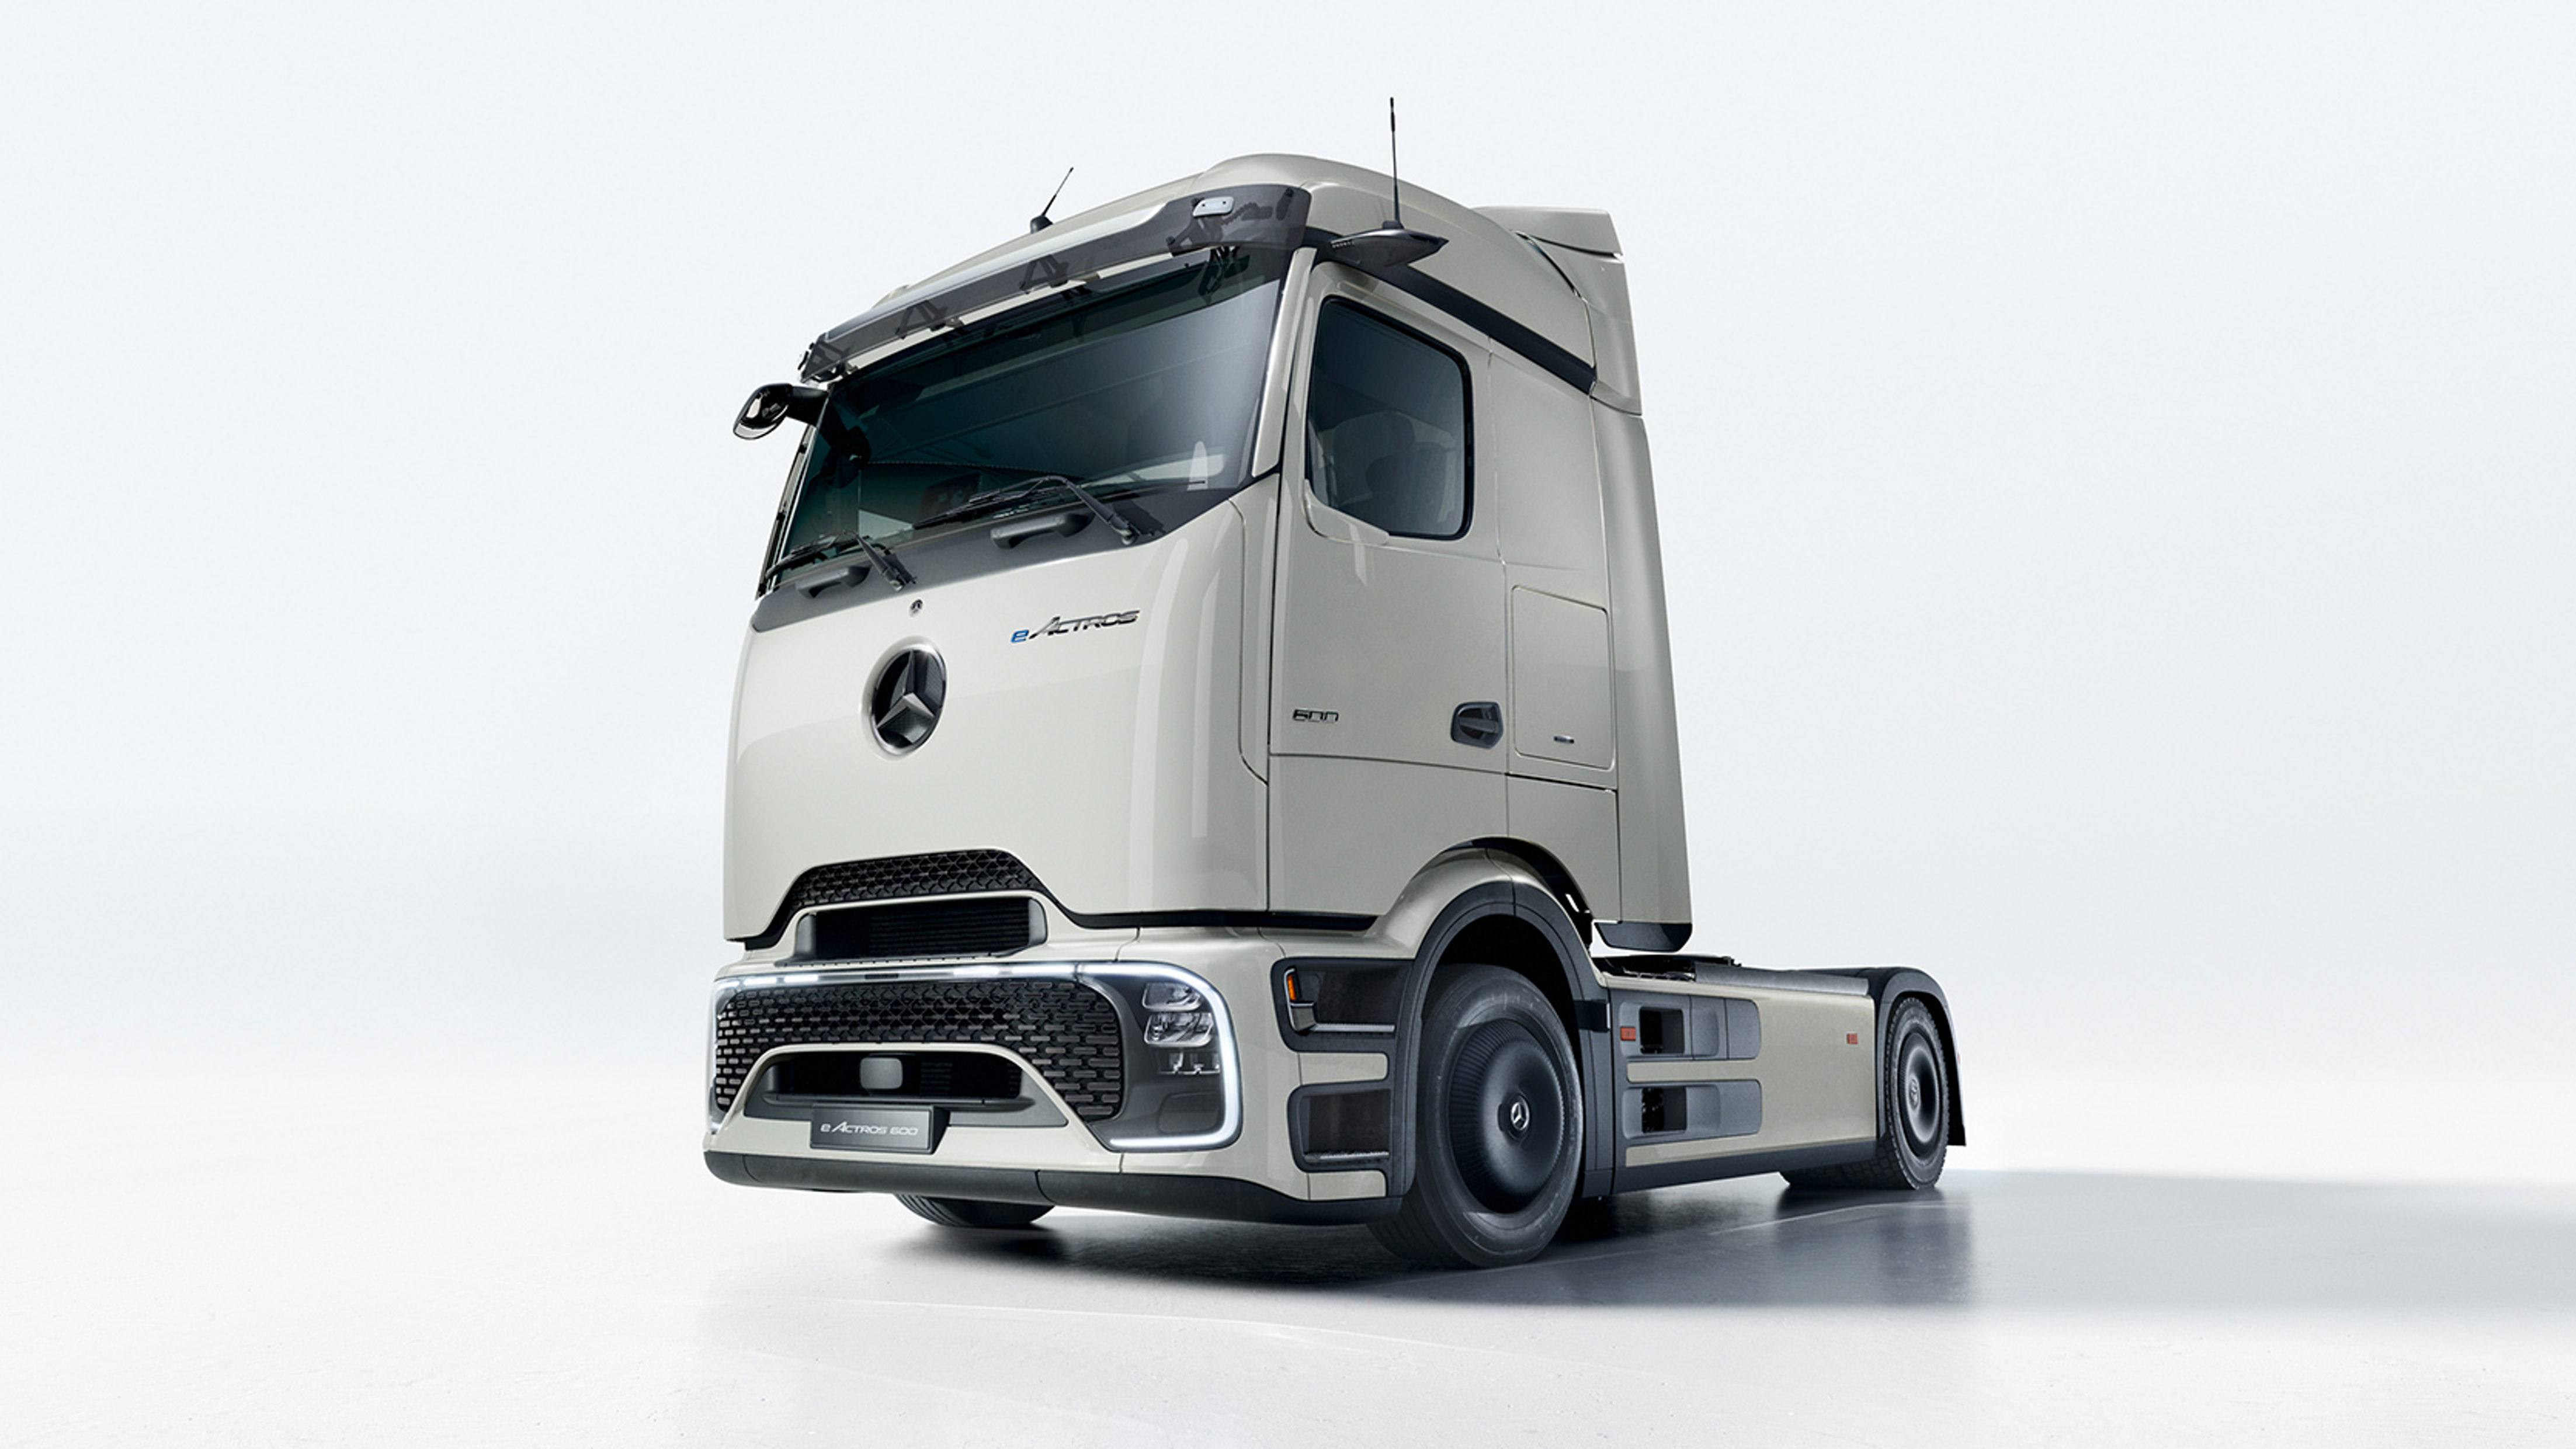 Mercedes Klimaanlage: RICHTIGE Bedienung + ALLE Funktionen